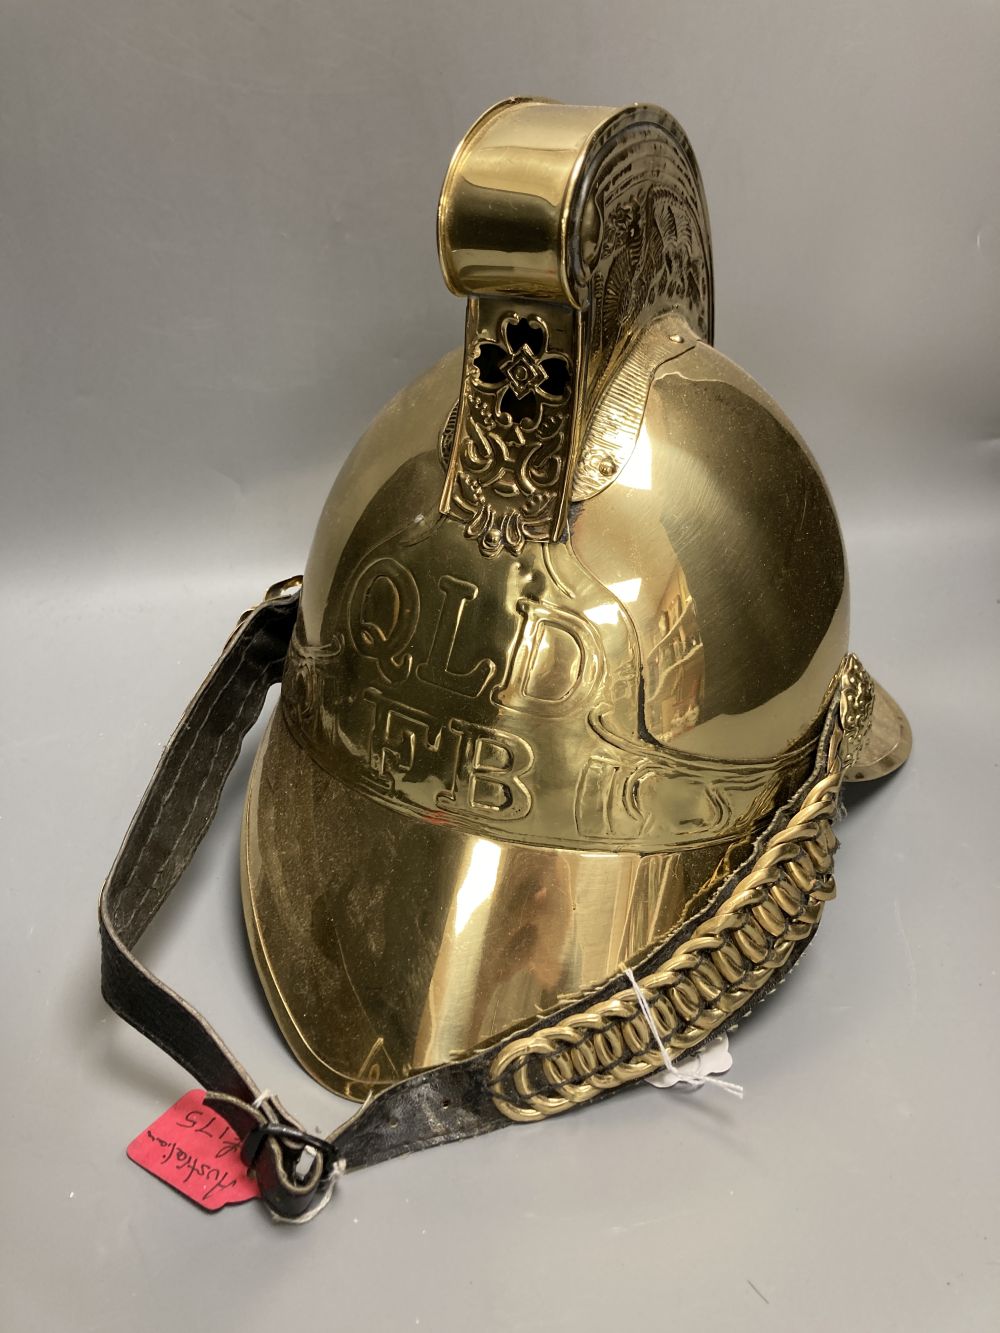 A reproduction brass firemans helmet, height 27cm